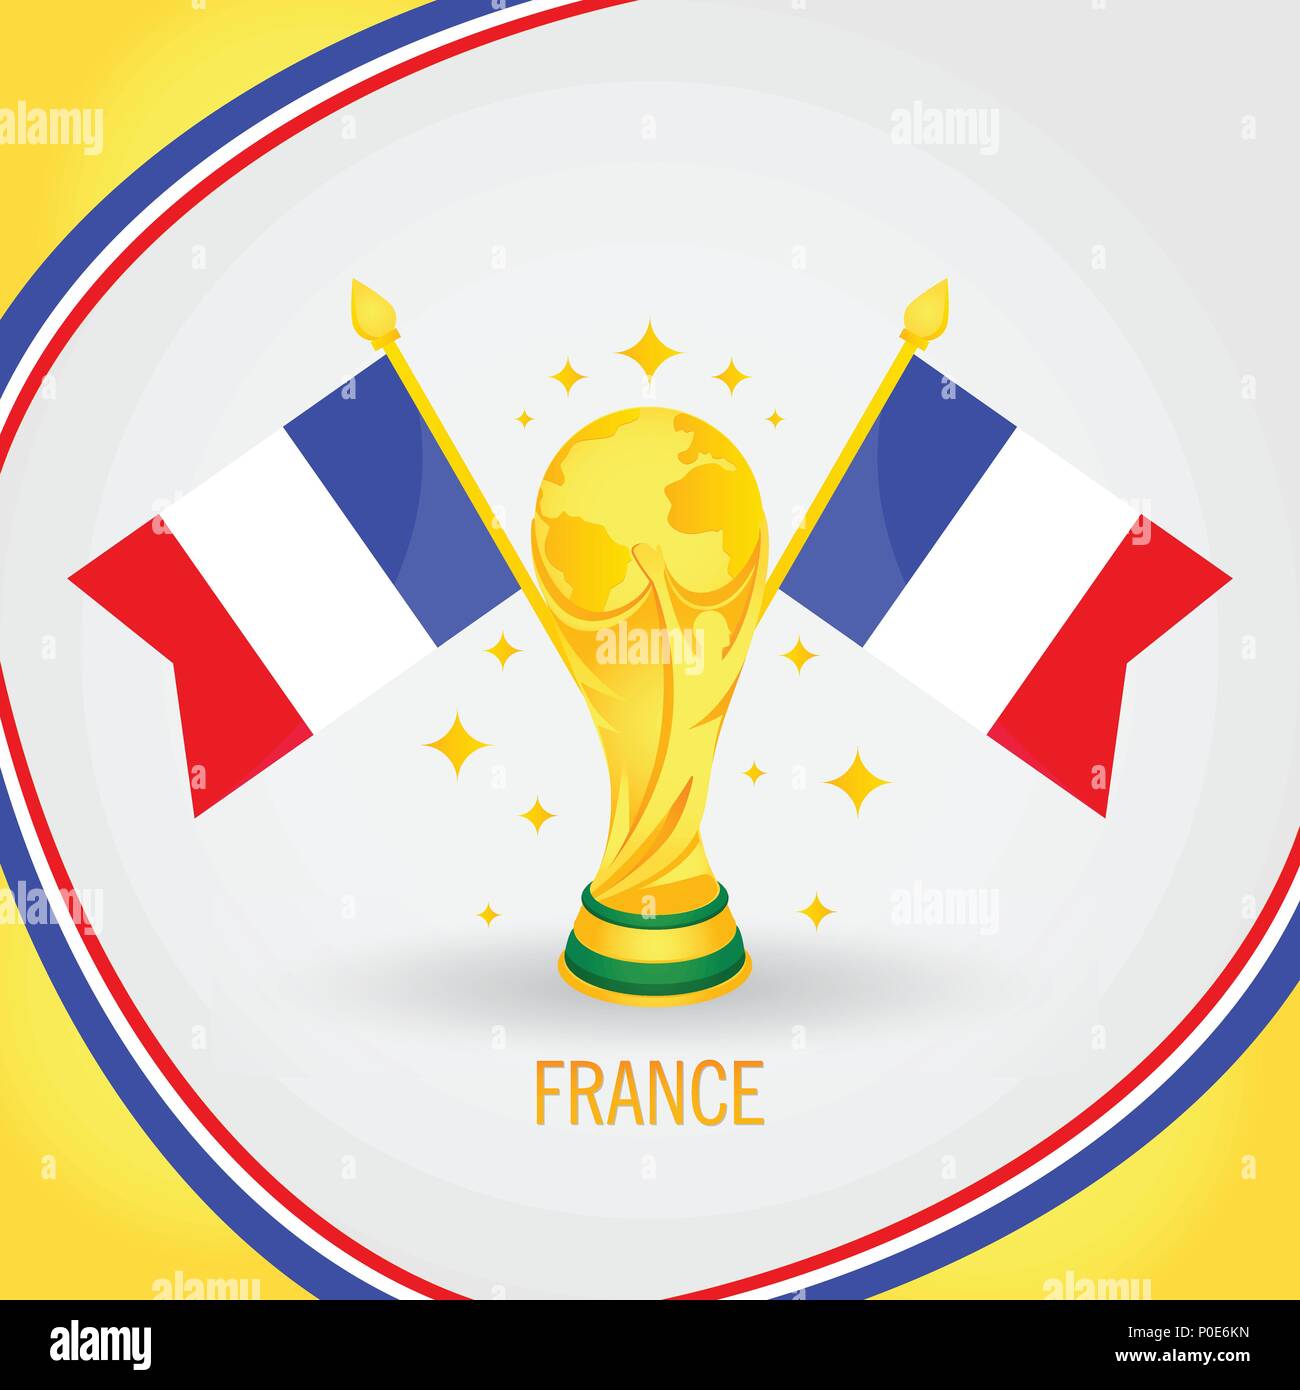 France Football Campione Coppa del Mondo 2018 - Bandiera e Golden Trophy Illustrazione Vettoriale